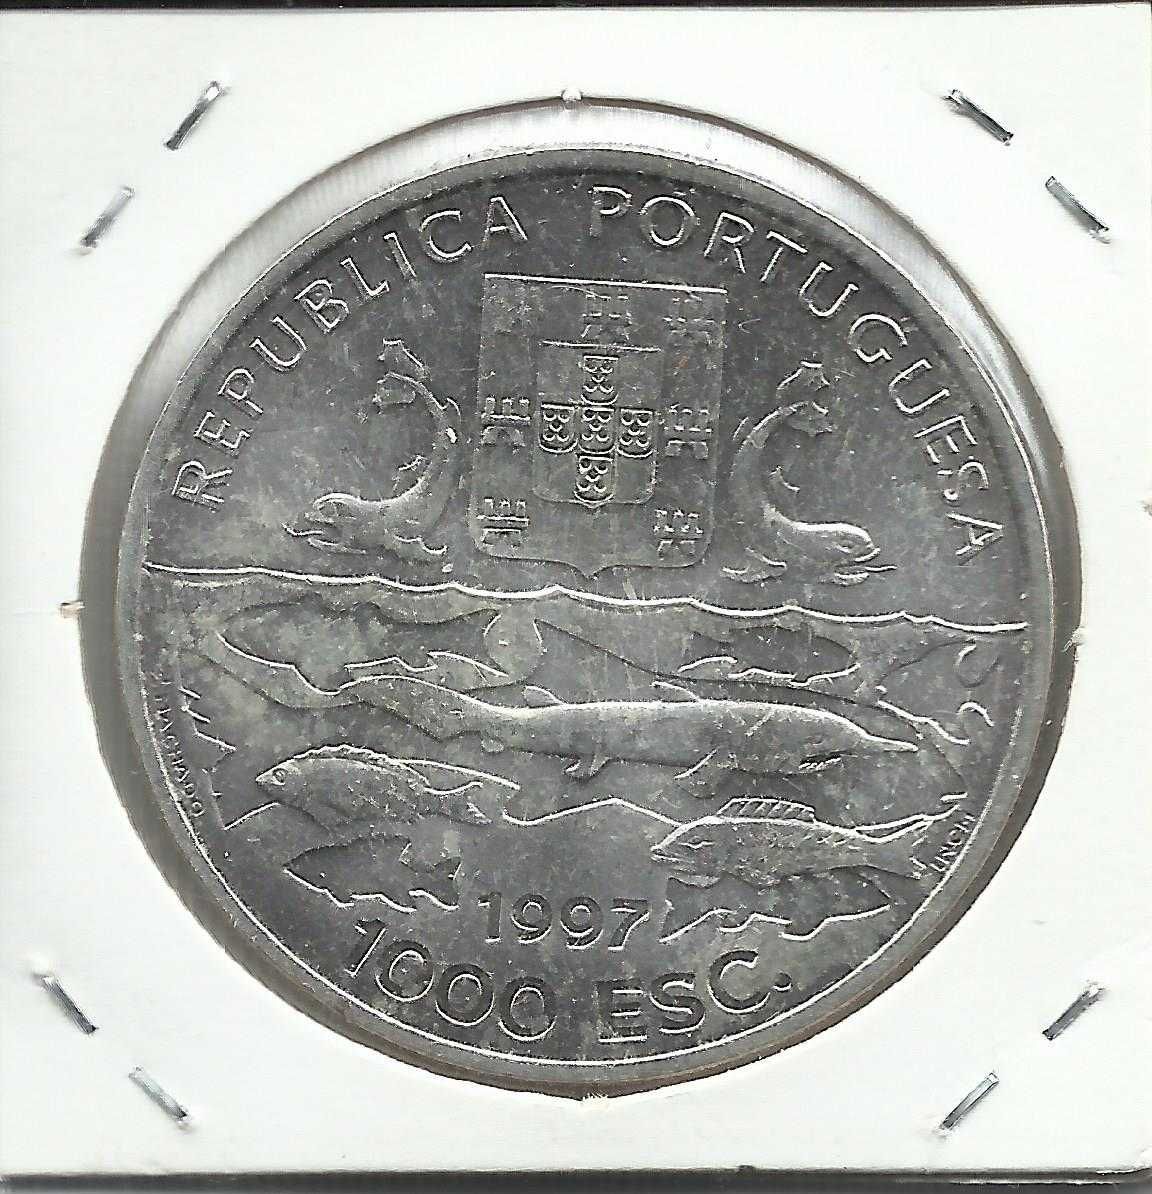 Moeda portuguesa  - Cent.º Exp. Oceanográficas, 1.000$00 - 1997, Prata